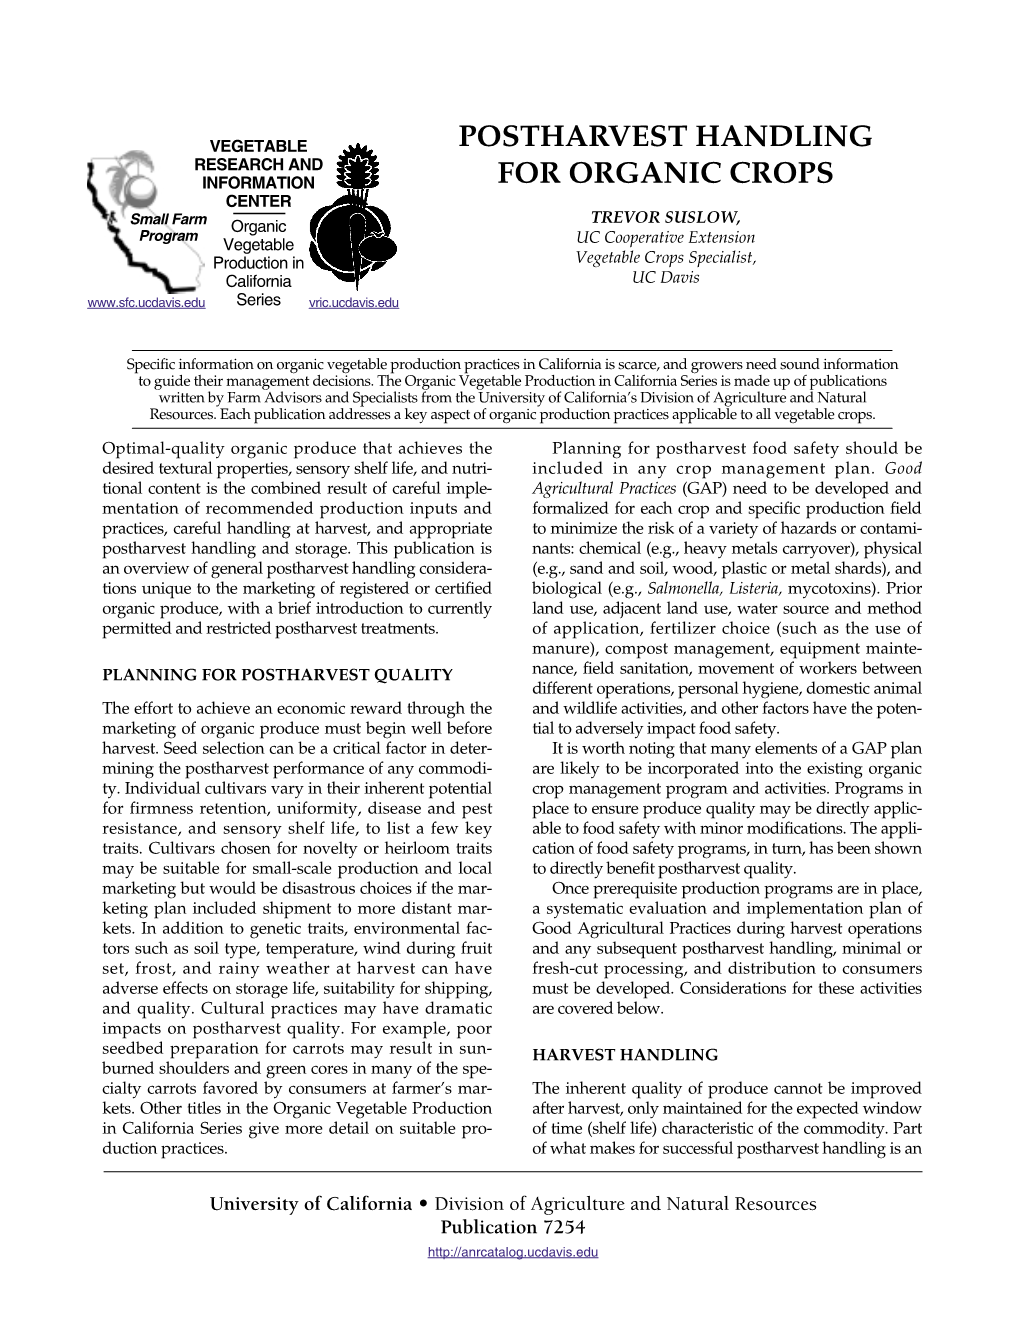 Postharvest Handling for Organic Crops